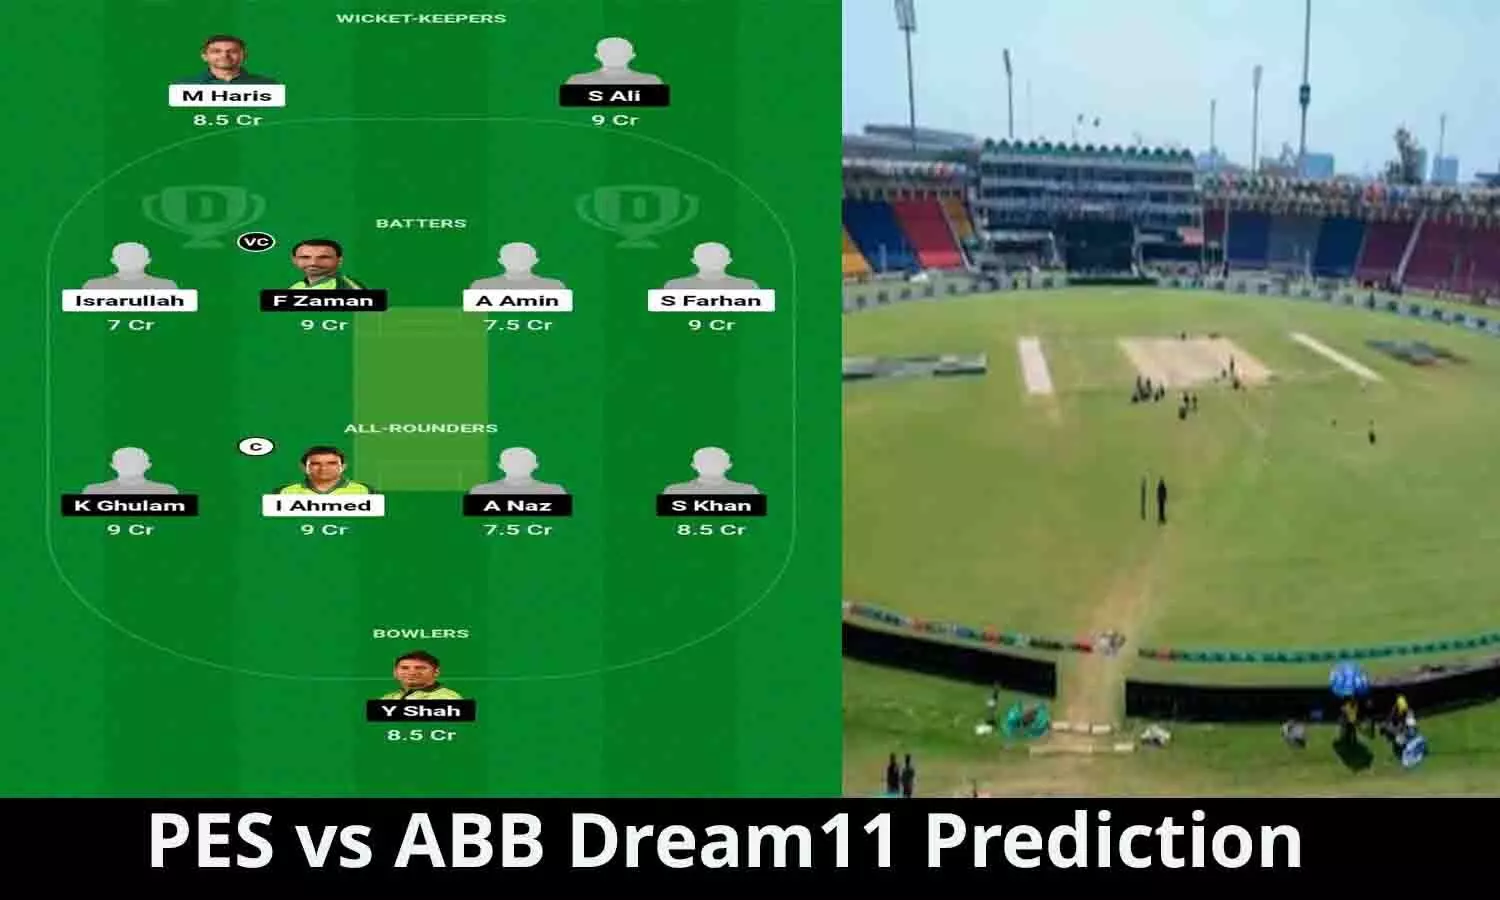 PES vs ABB Dream11 Prediction